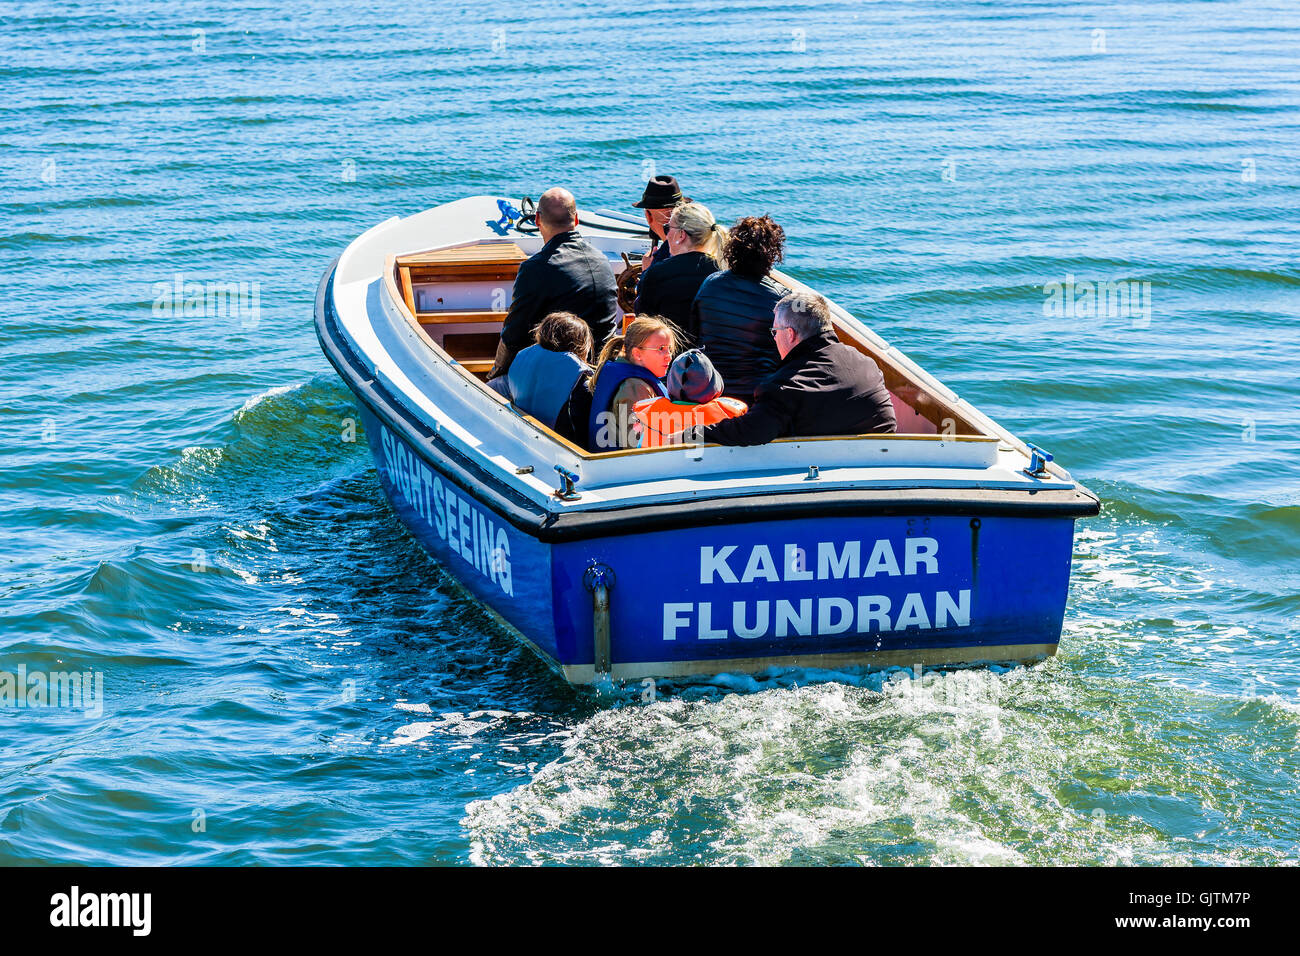 Kalmar, Schweden - 10. August 2016: Touristen auf dem Sightseeing-Boot Kalmar Flundran wie von hinten und oben zu sehen. Stockfoto